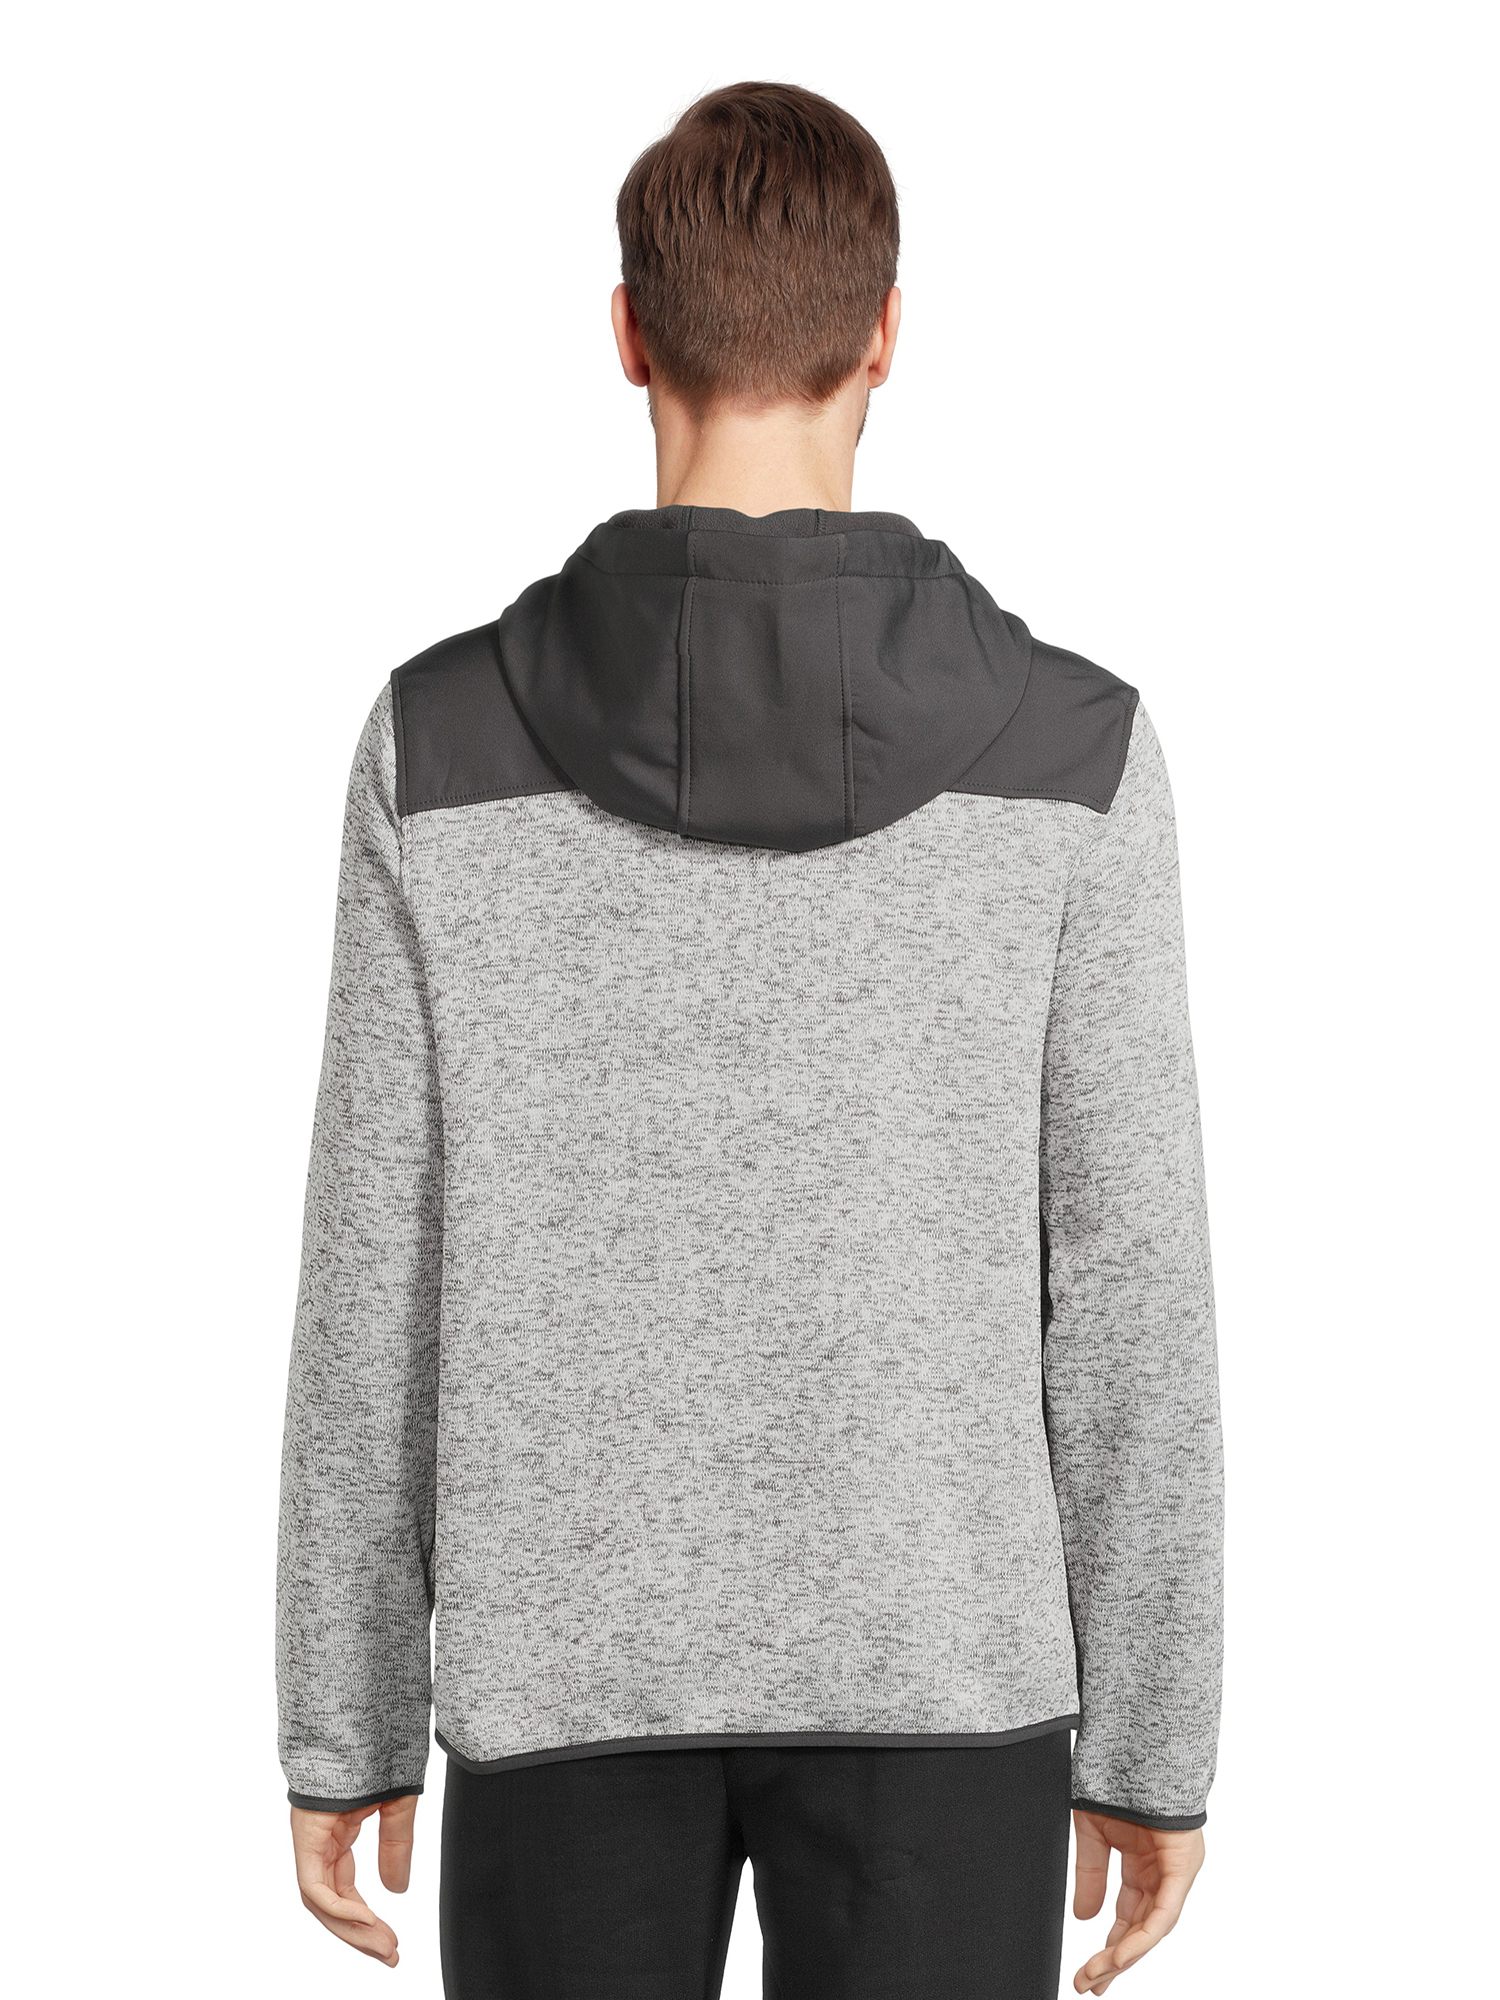 Reebok Men’s Hooded Sweater Fleece Jacket, Sizes M-2XL - image 3 of 5